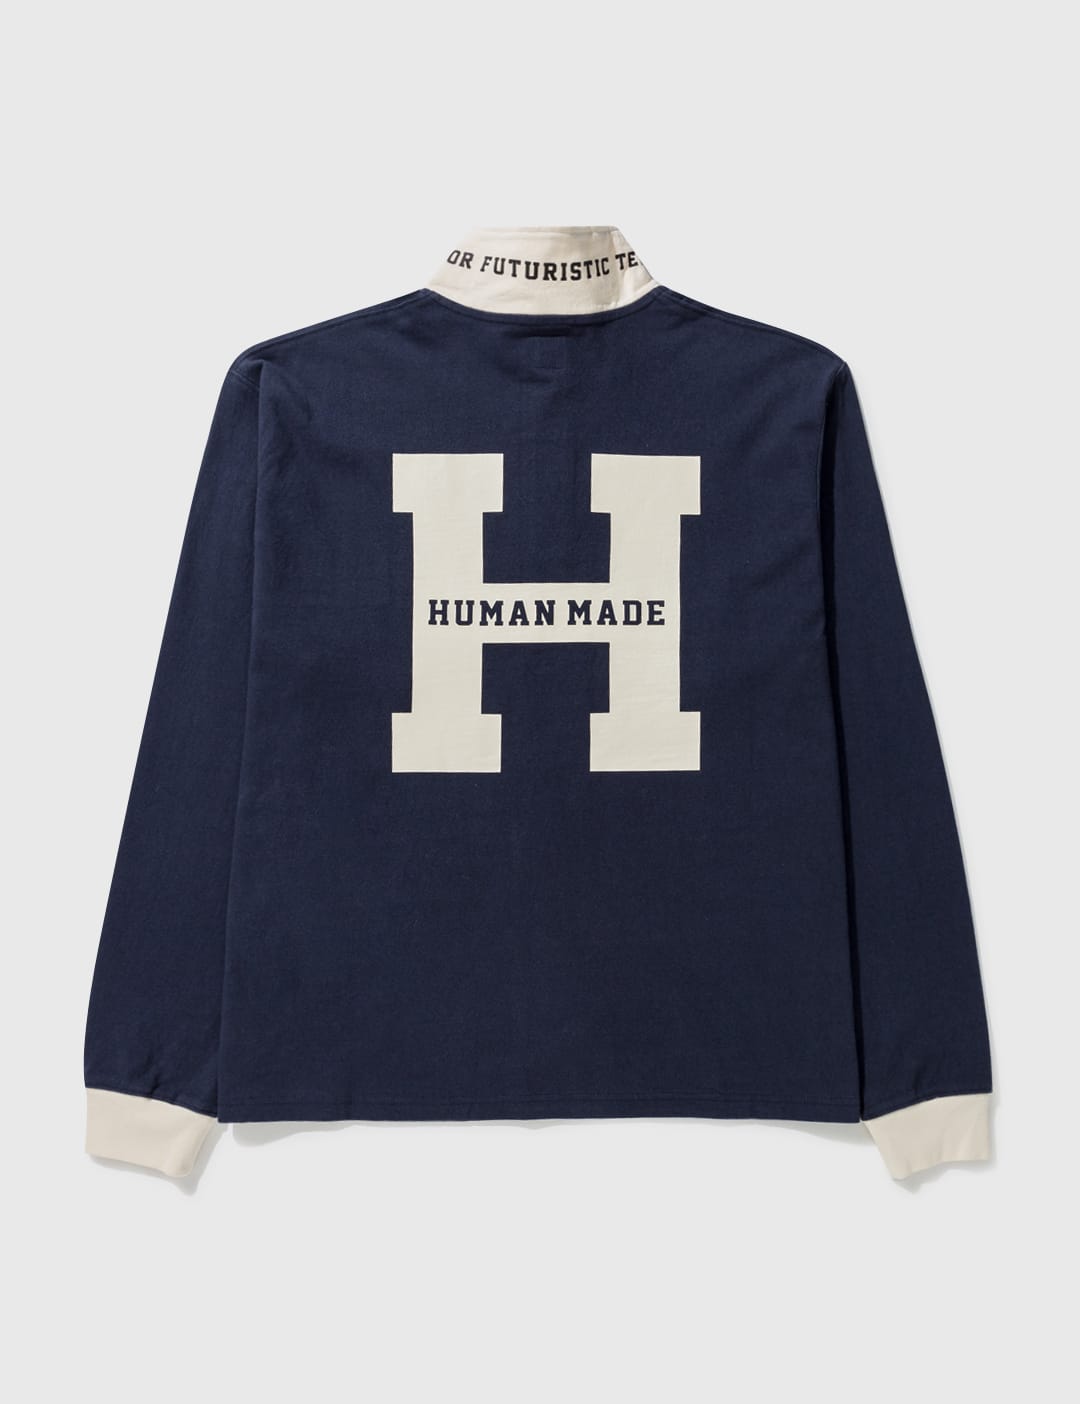 Human Made - ラガー シャツ #1 | HBX - ハイプビースト(Hypebeast)が厳選したグローバルファッション&ライフスタイル